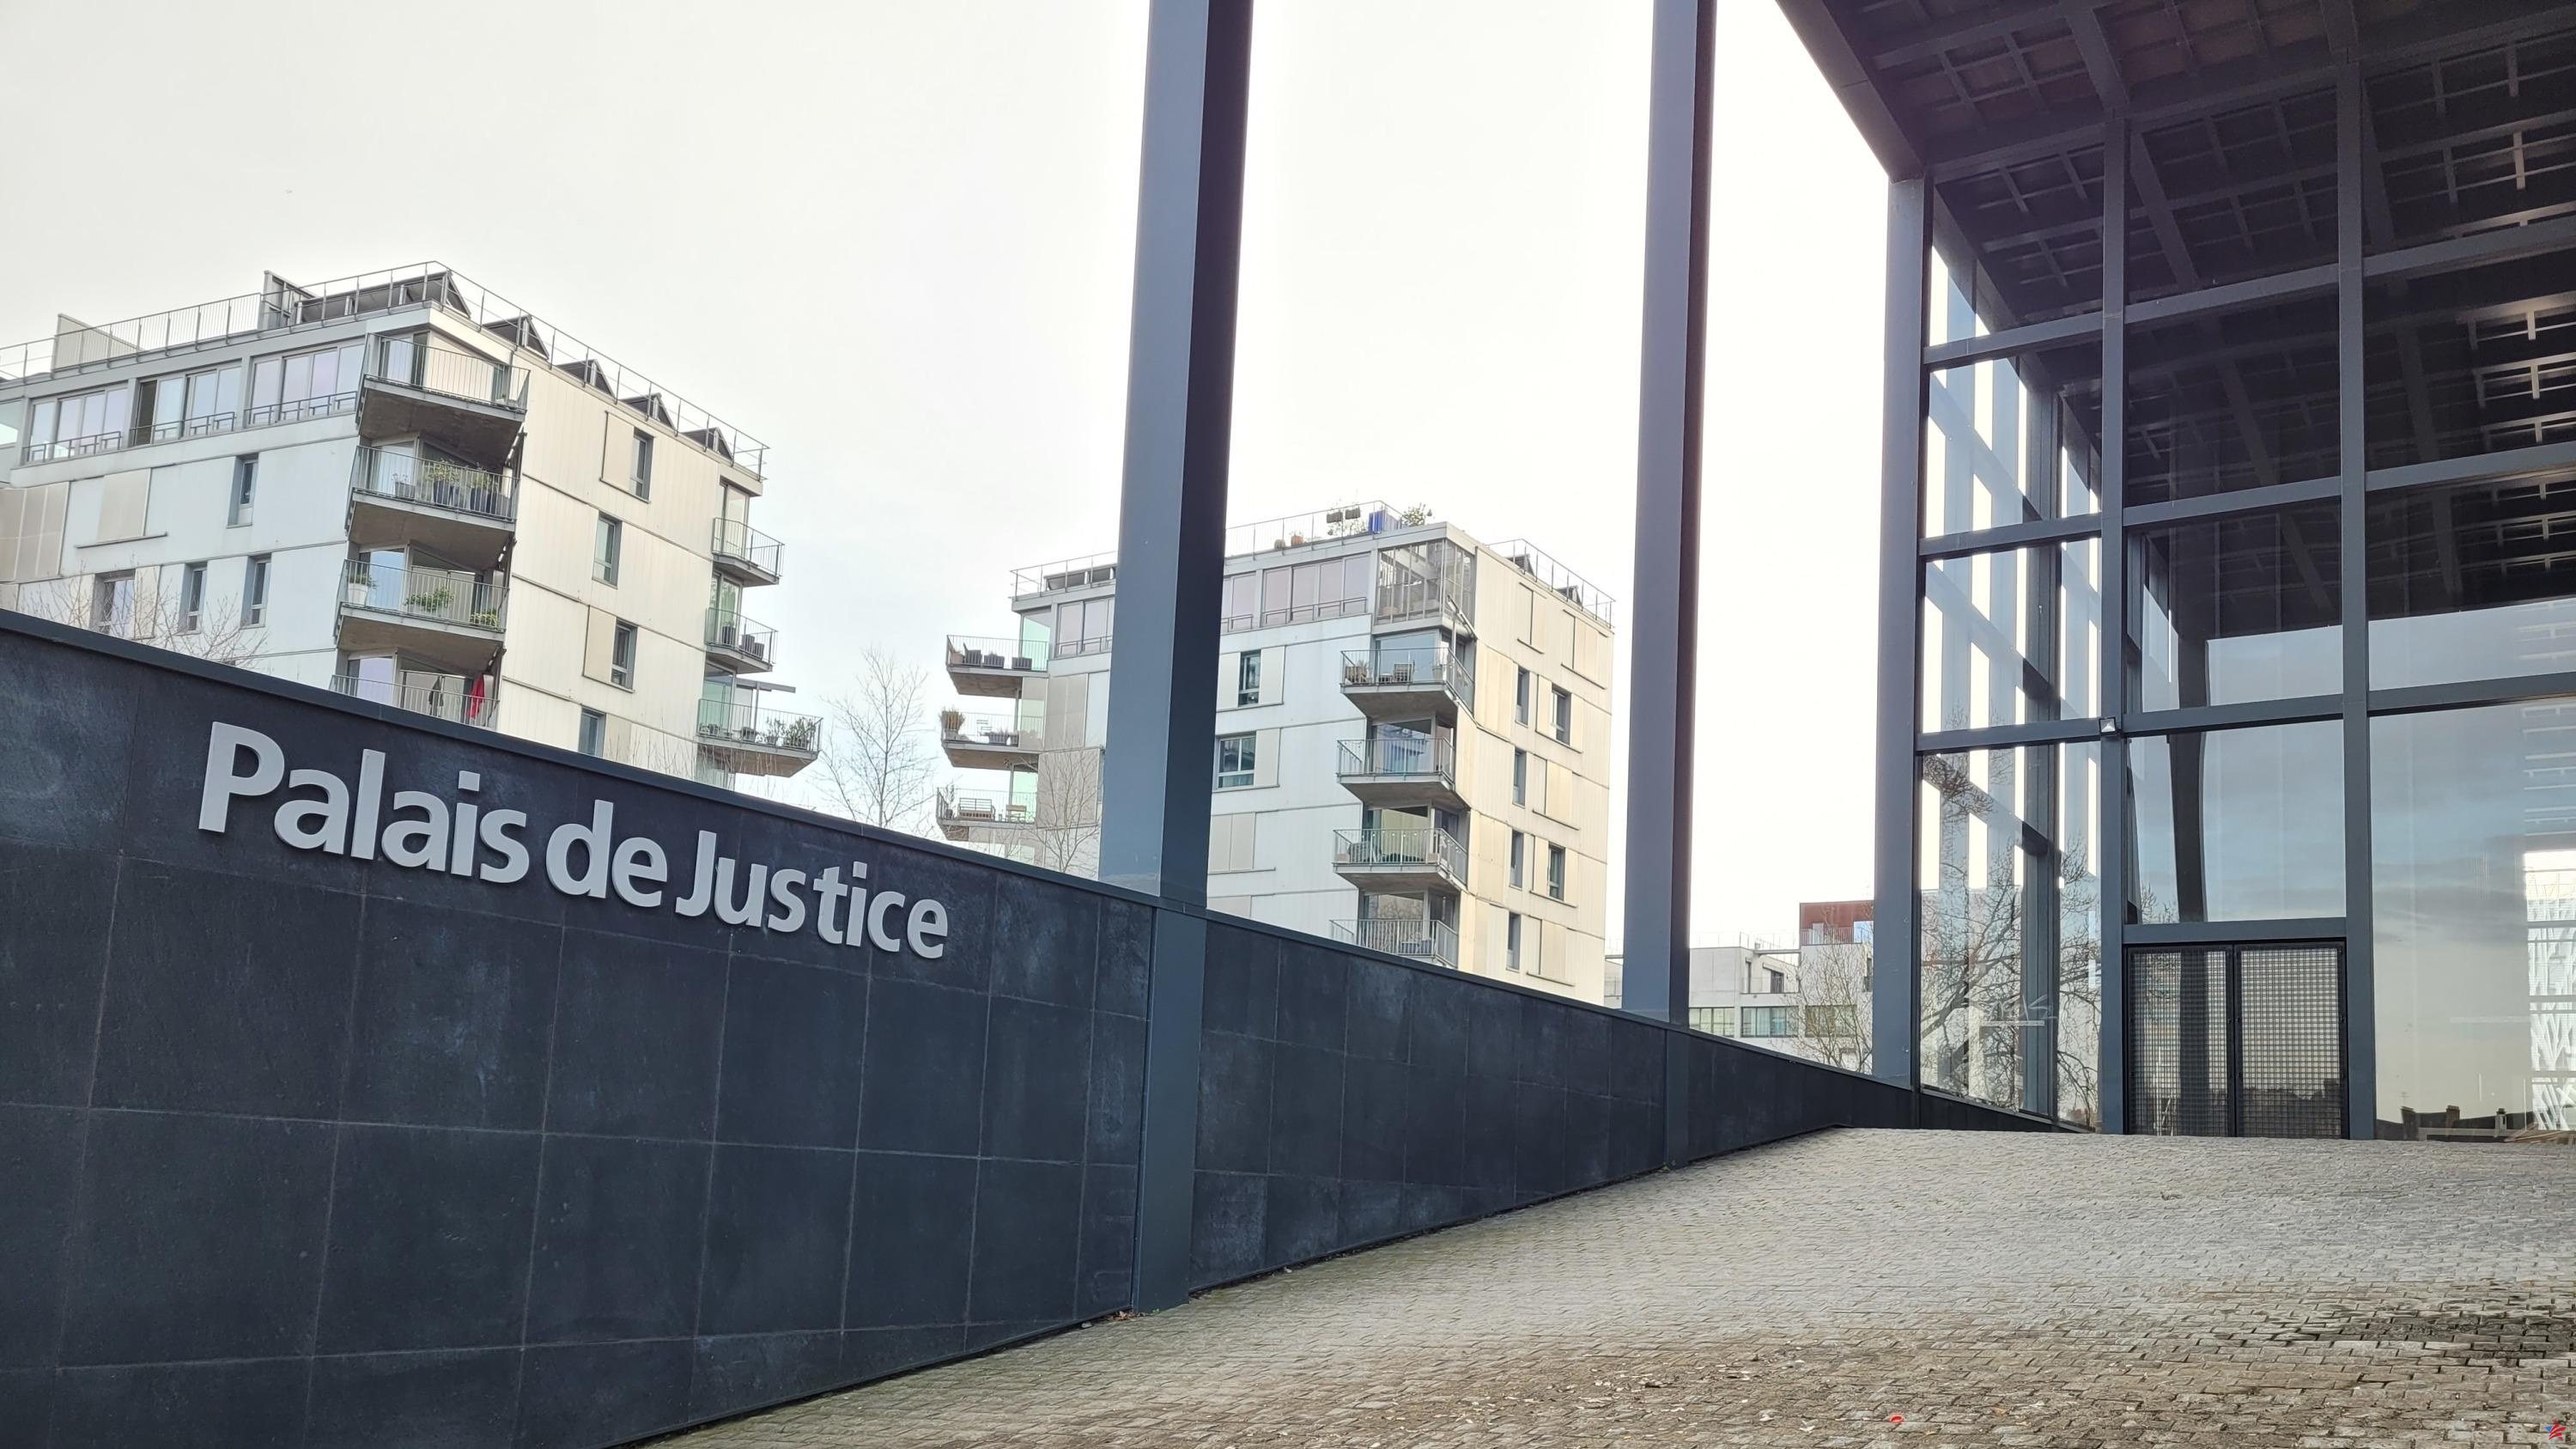 Le arrebató bolsos a señoras mayores para pagar su deuda de “drogas”: las palabras confusas de un acusado juzgado en Nantes